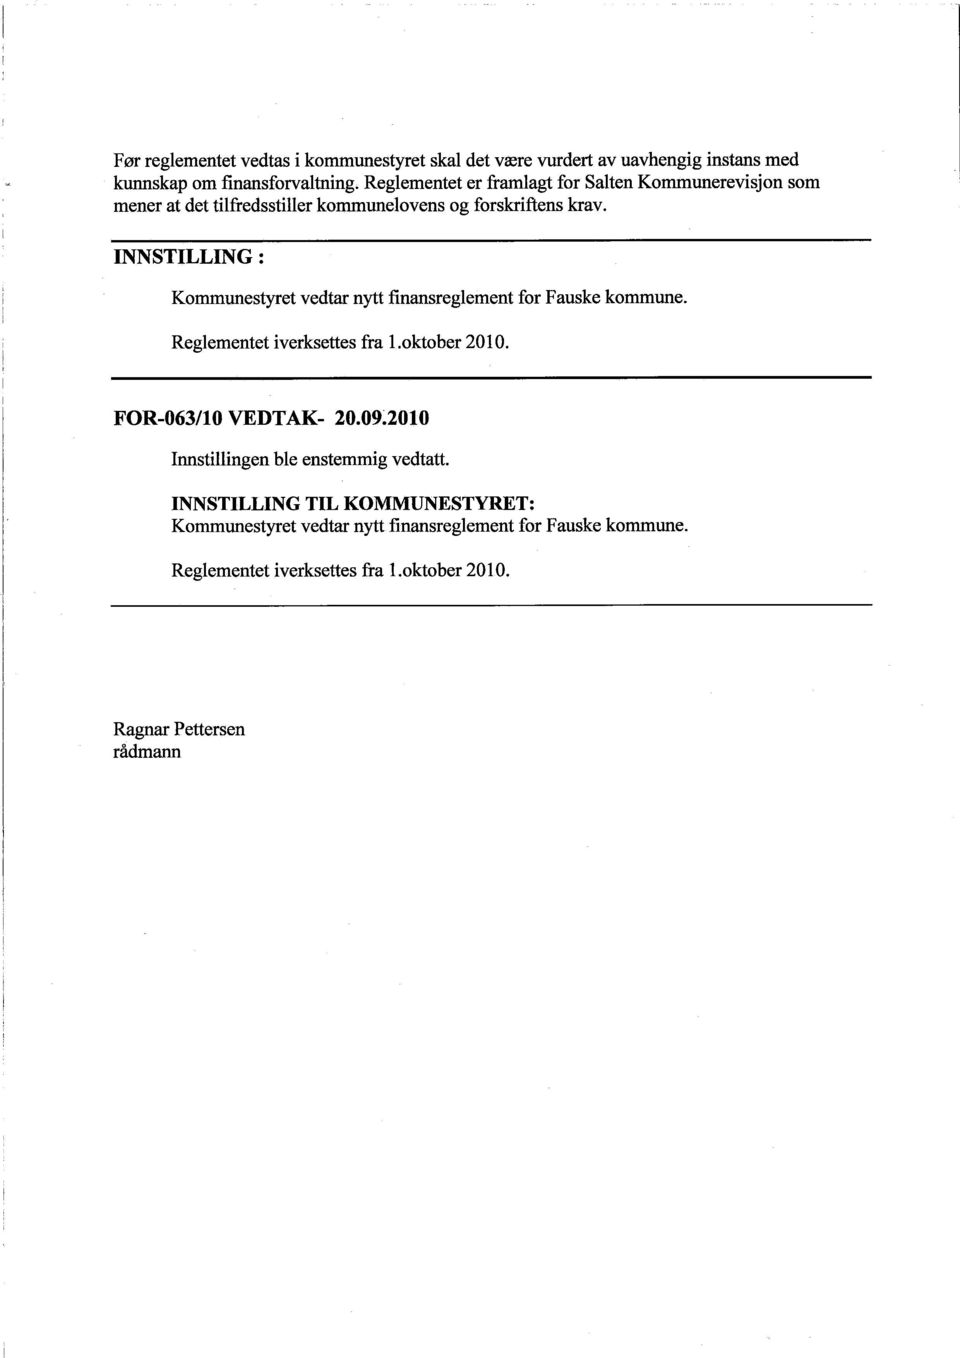 INNSTILLING: Kommunestyret vedtar nytt finansreglement for Fauske kommune. Reglementet ìverksettes fra L.oktober 2010. FOR-063/l0 VEDTAK- 20.